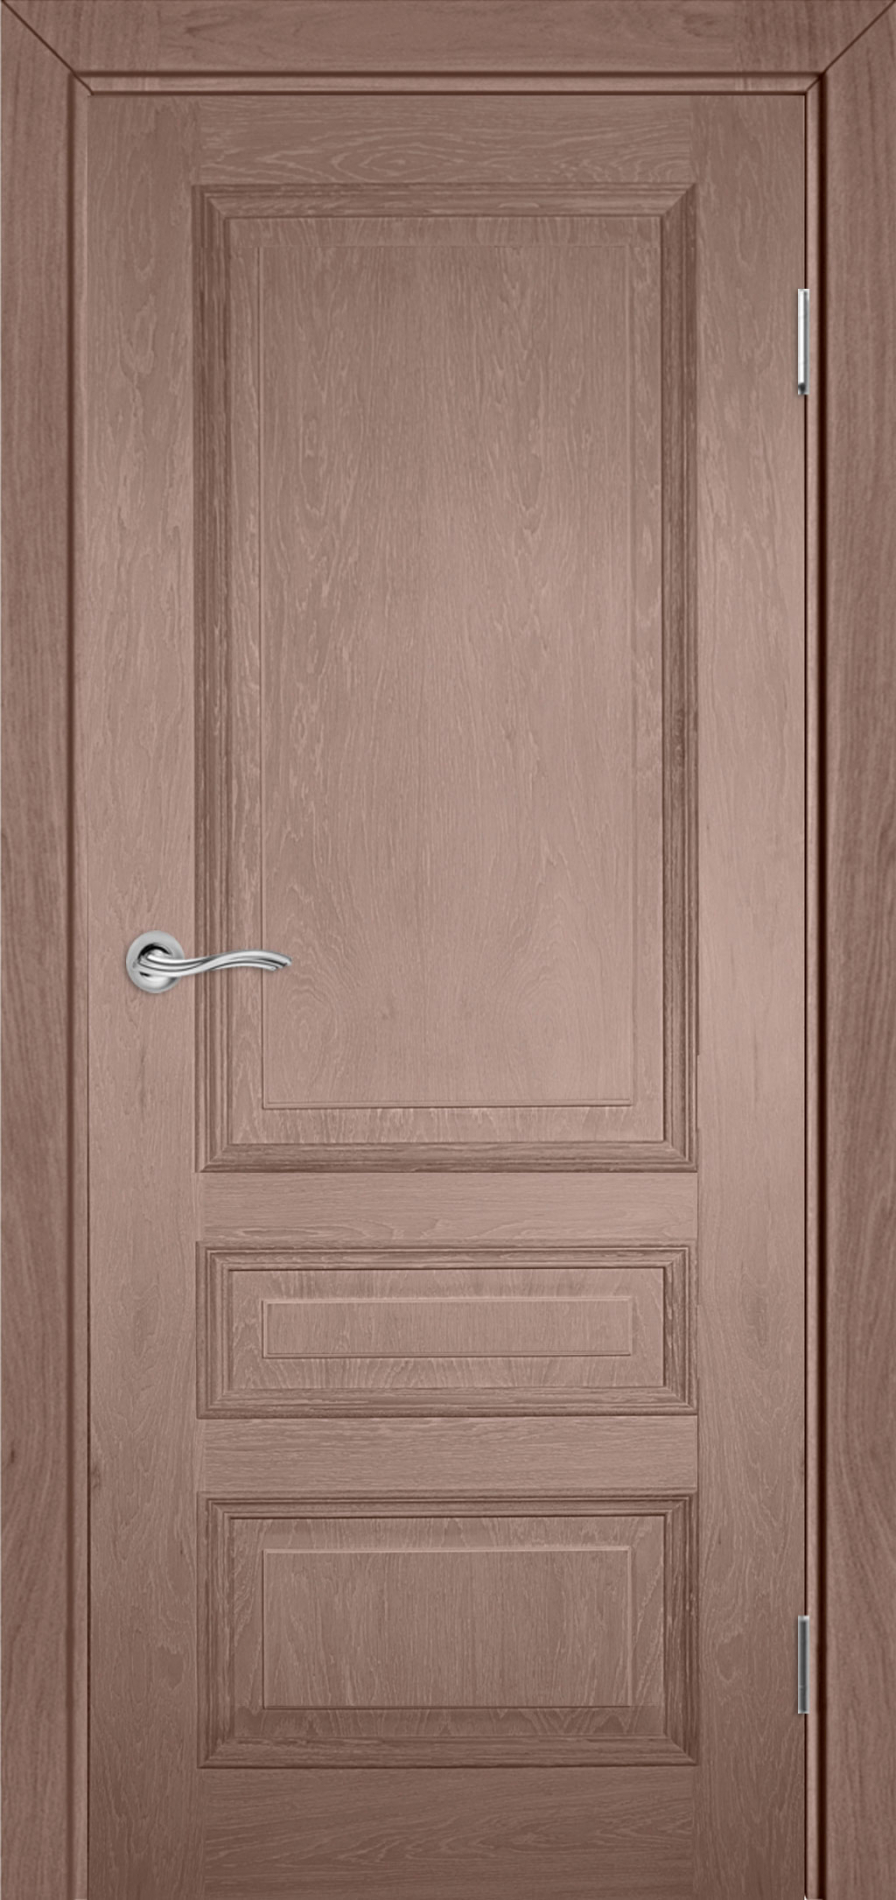 межкомнатные двери  Прованс Classica Версаль шпон